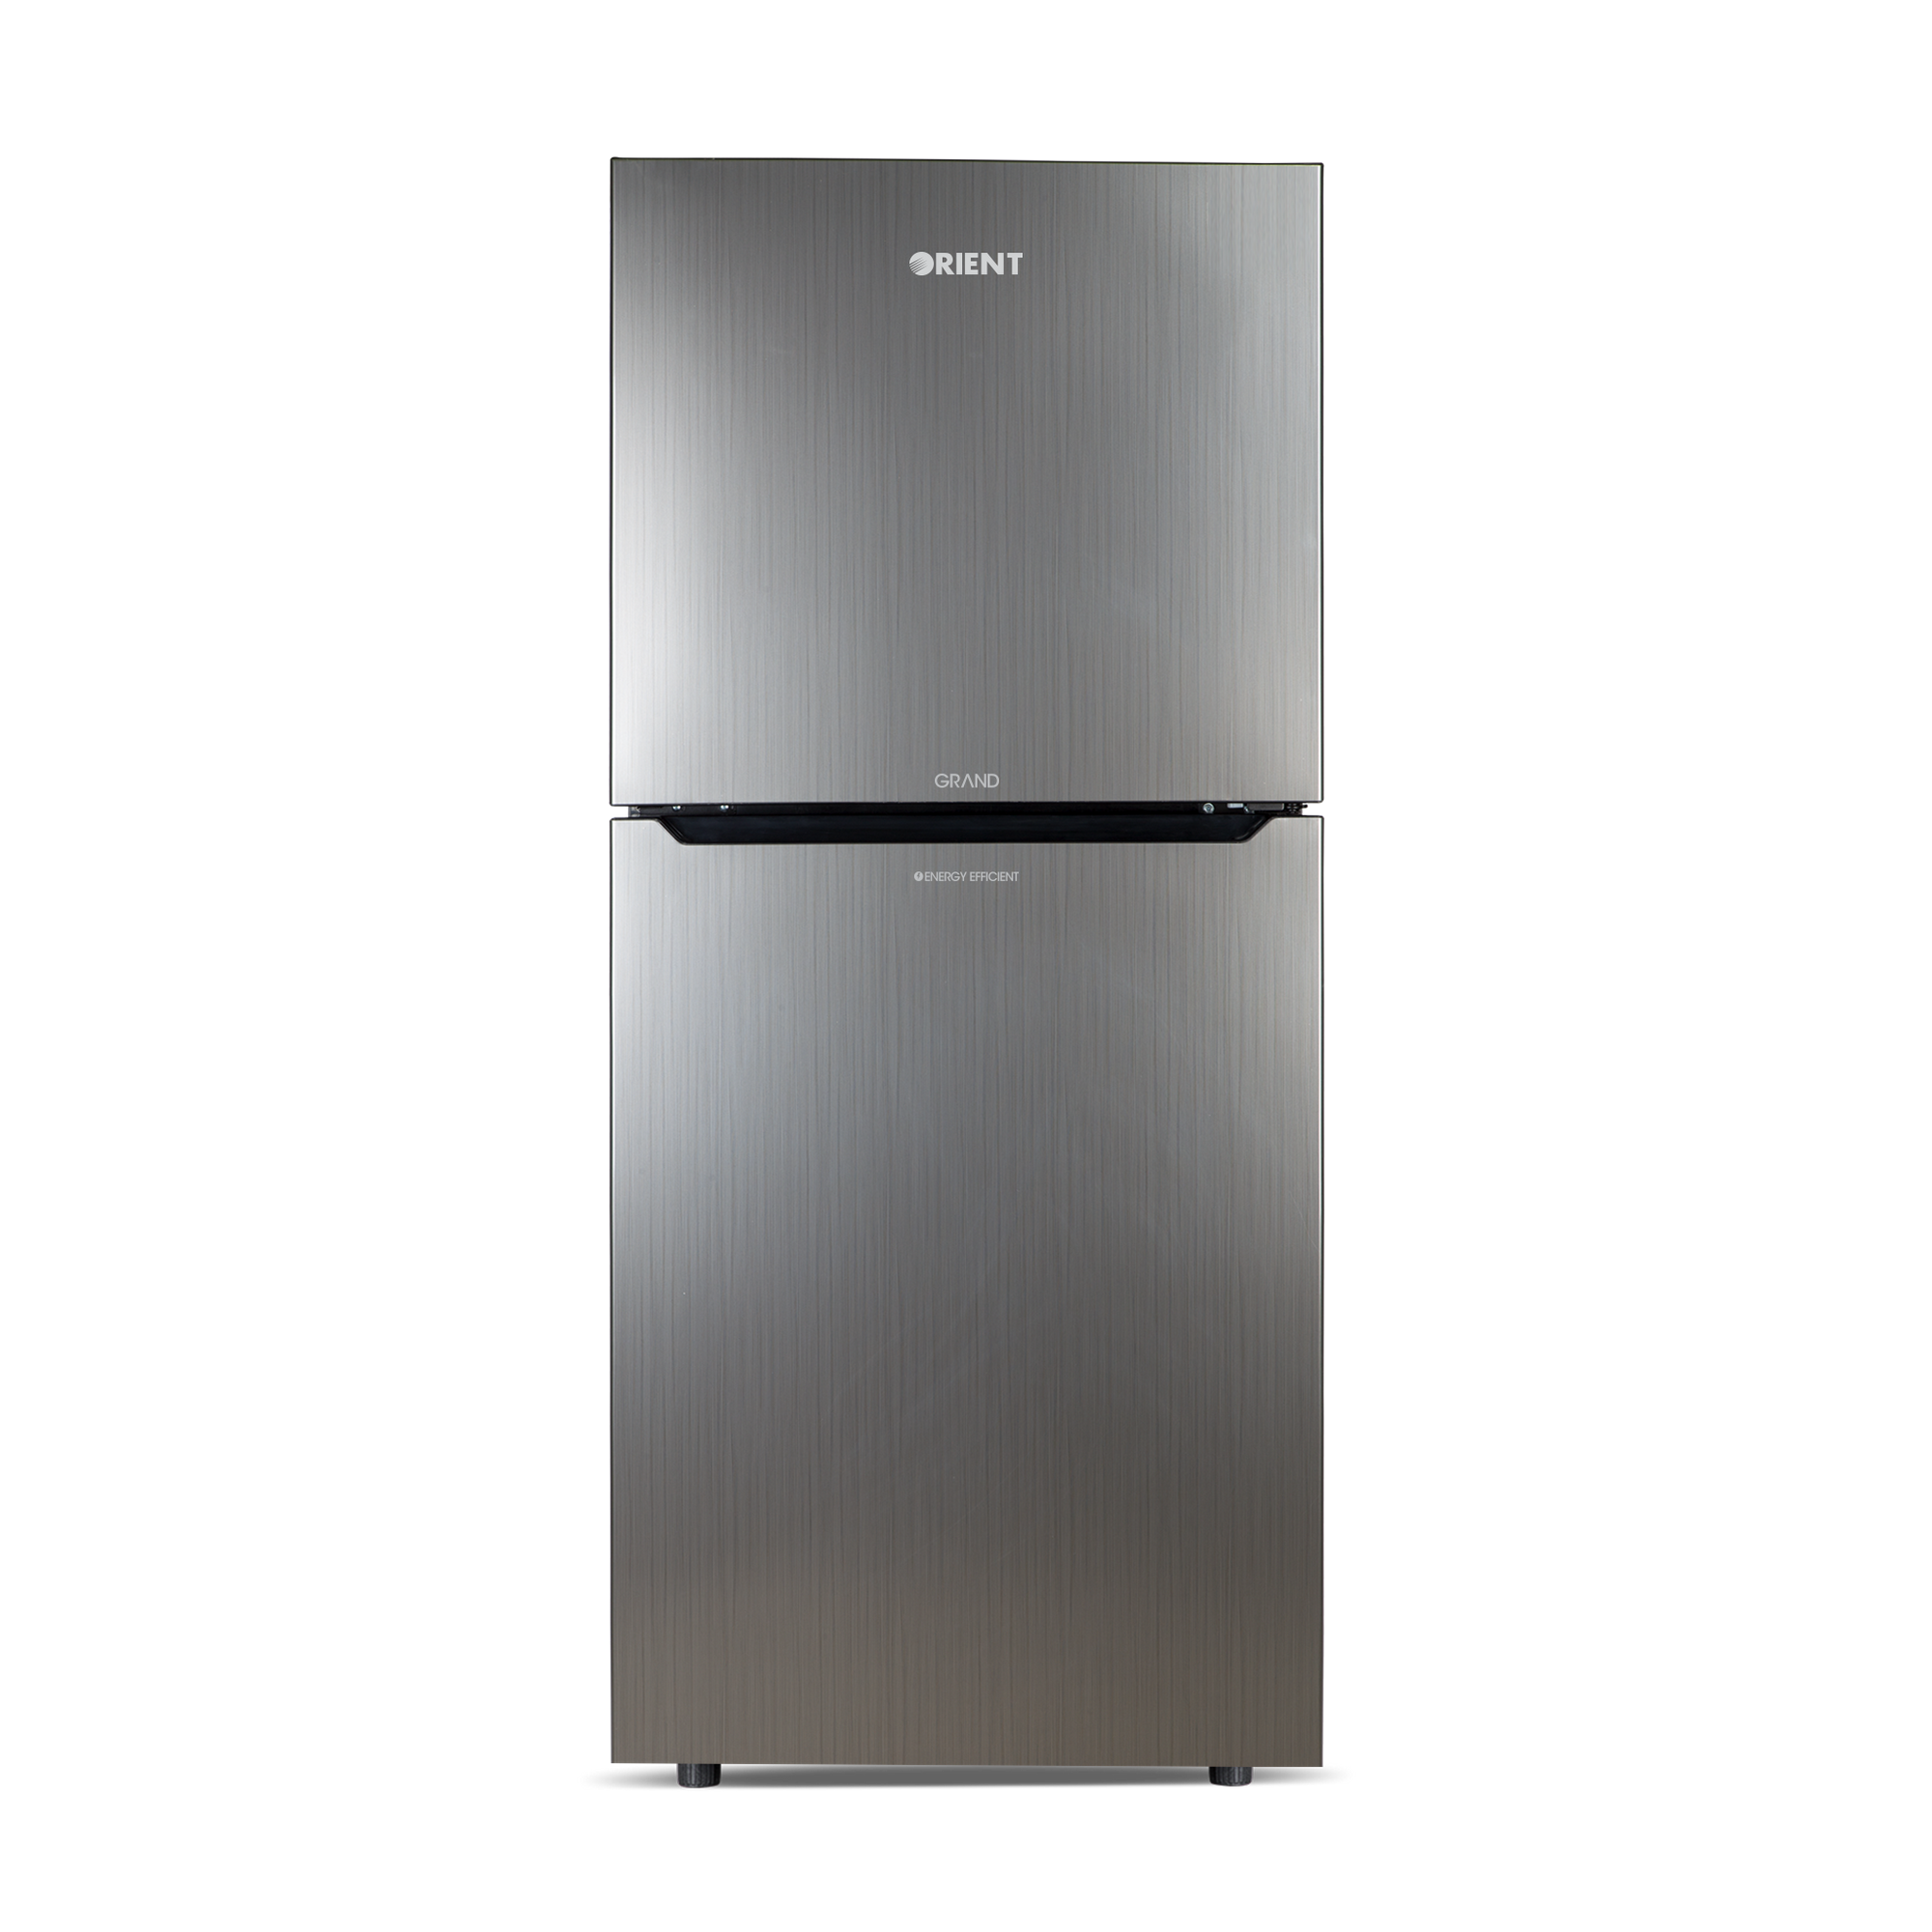 Orient Refrigerator Double Door - 415H Grand VCM - Jumbo Freezer